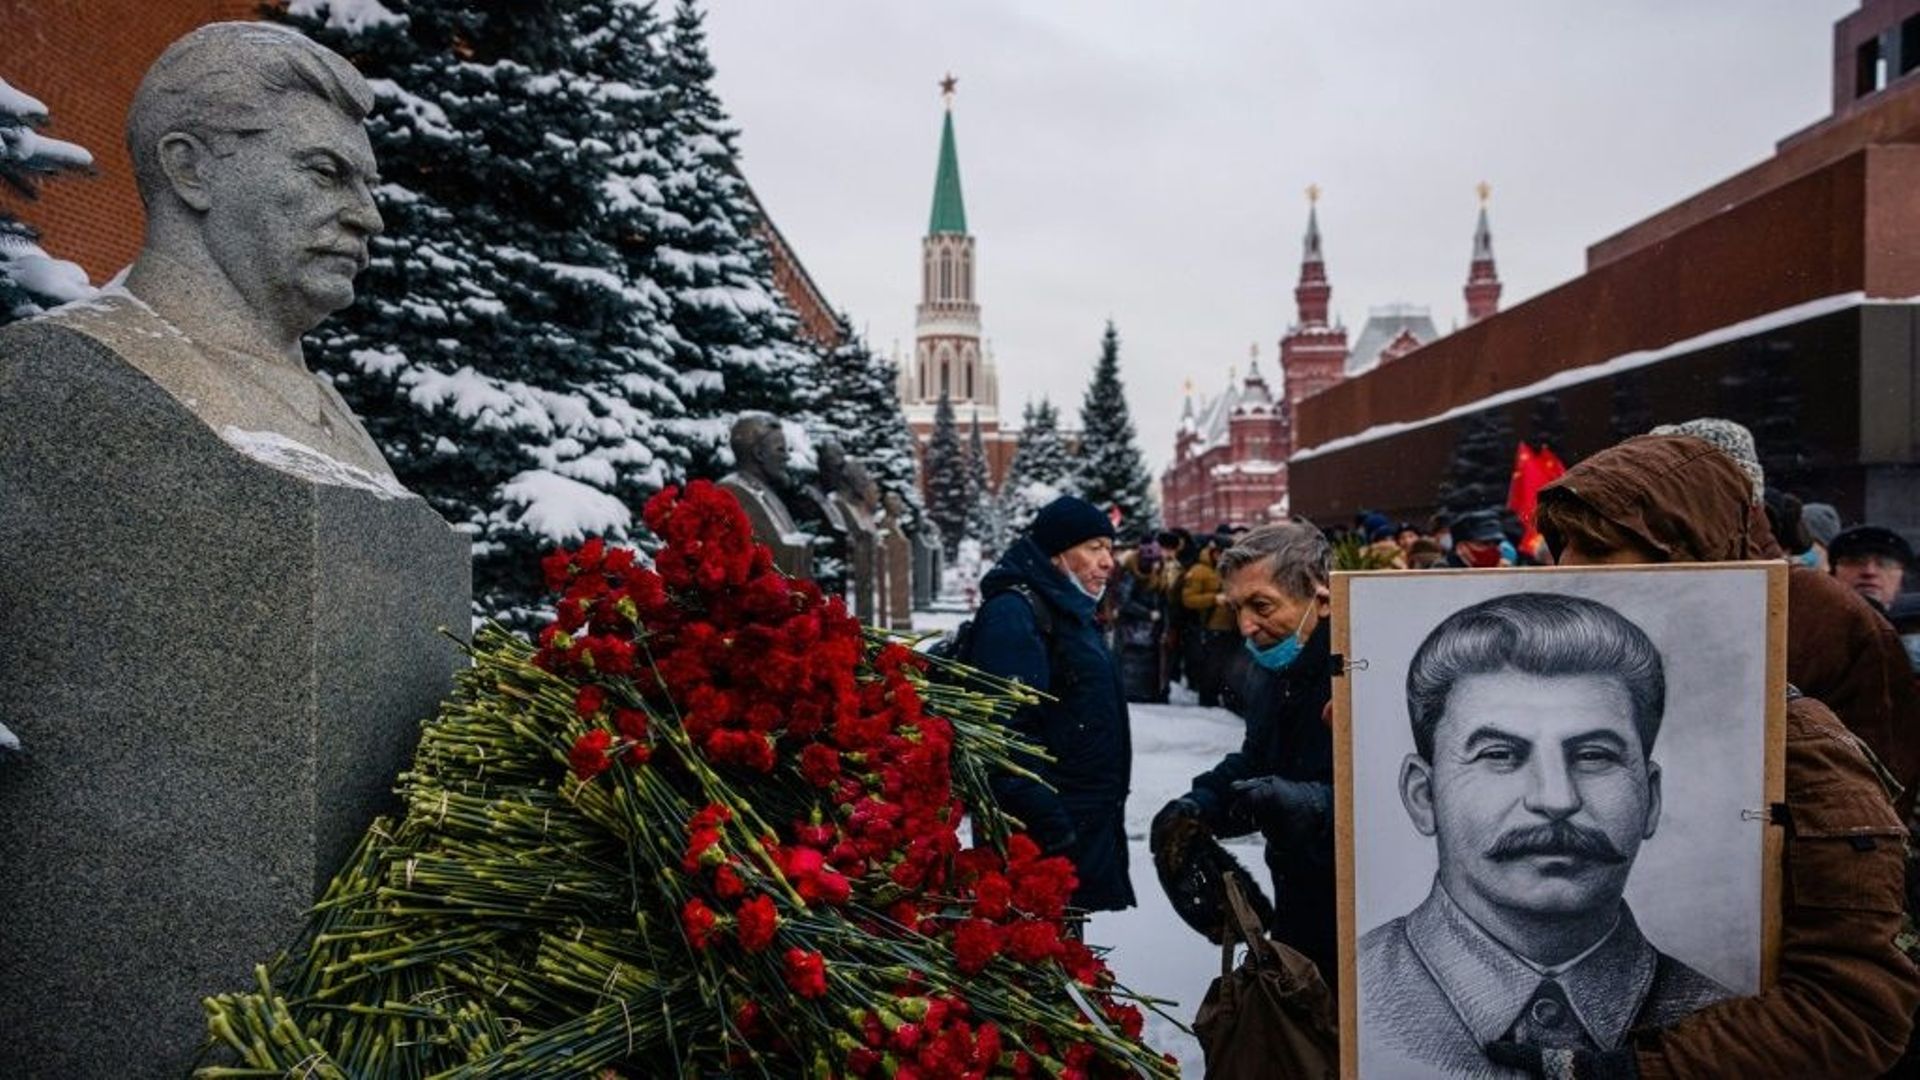 Des sympathisants communistes fleurissent la tombe du dictateur soviétique Joseph Staline sur la Place Rouge à Moscou le 21 décembre 2021
